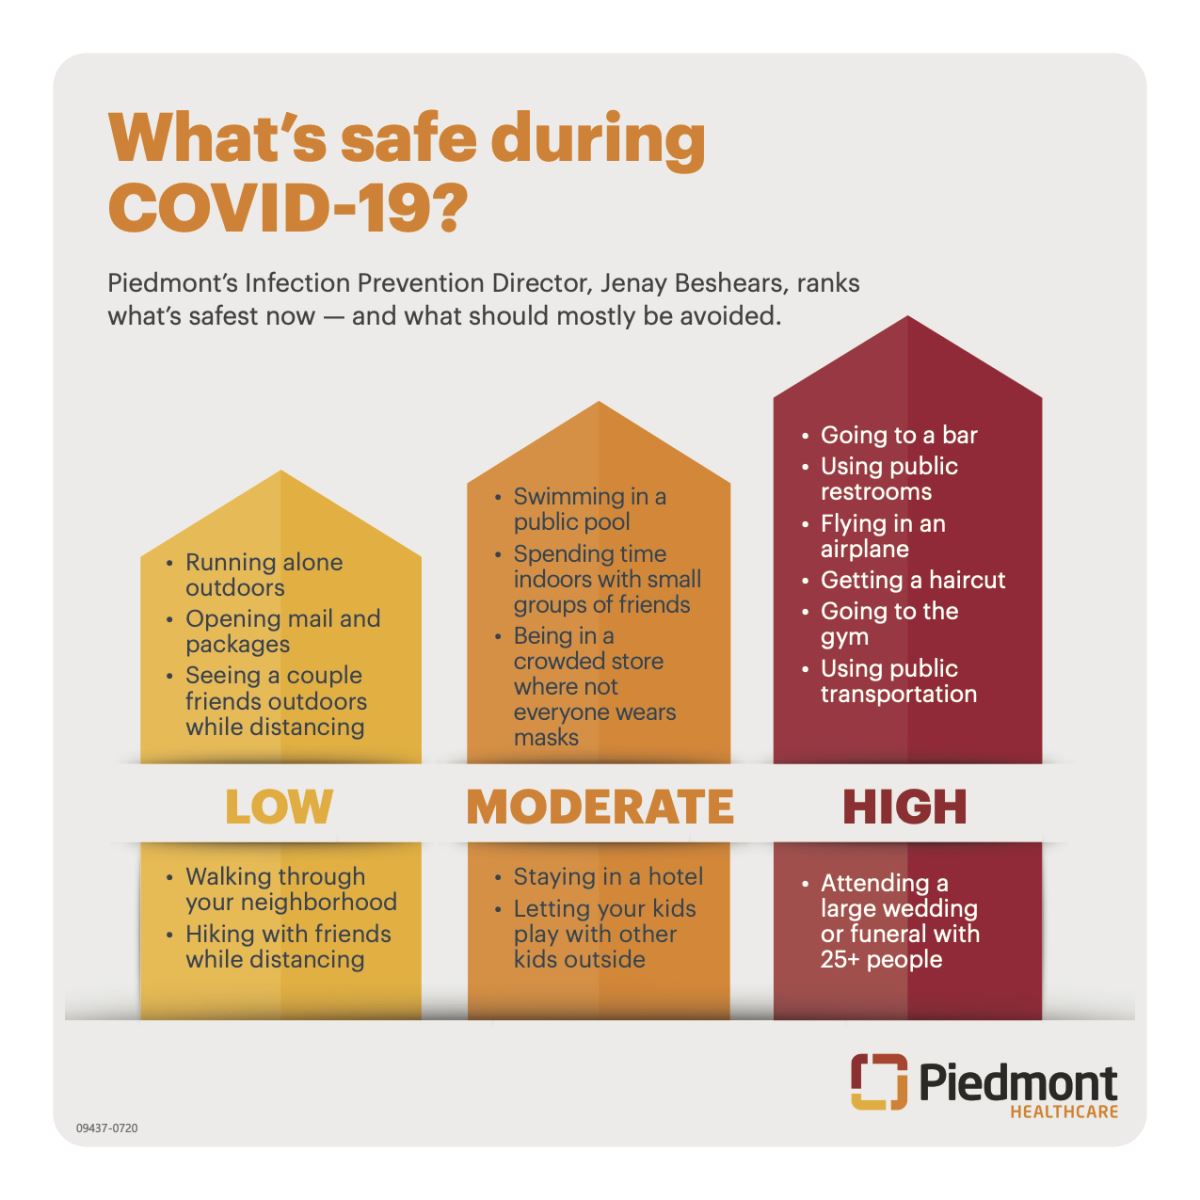 COVID-19 risk level graphic